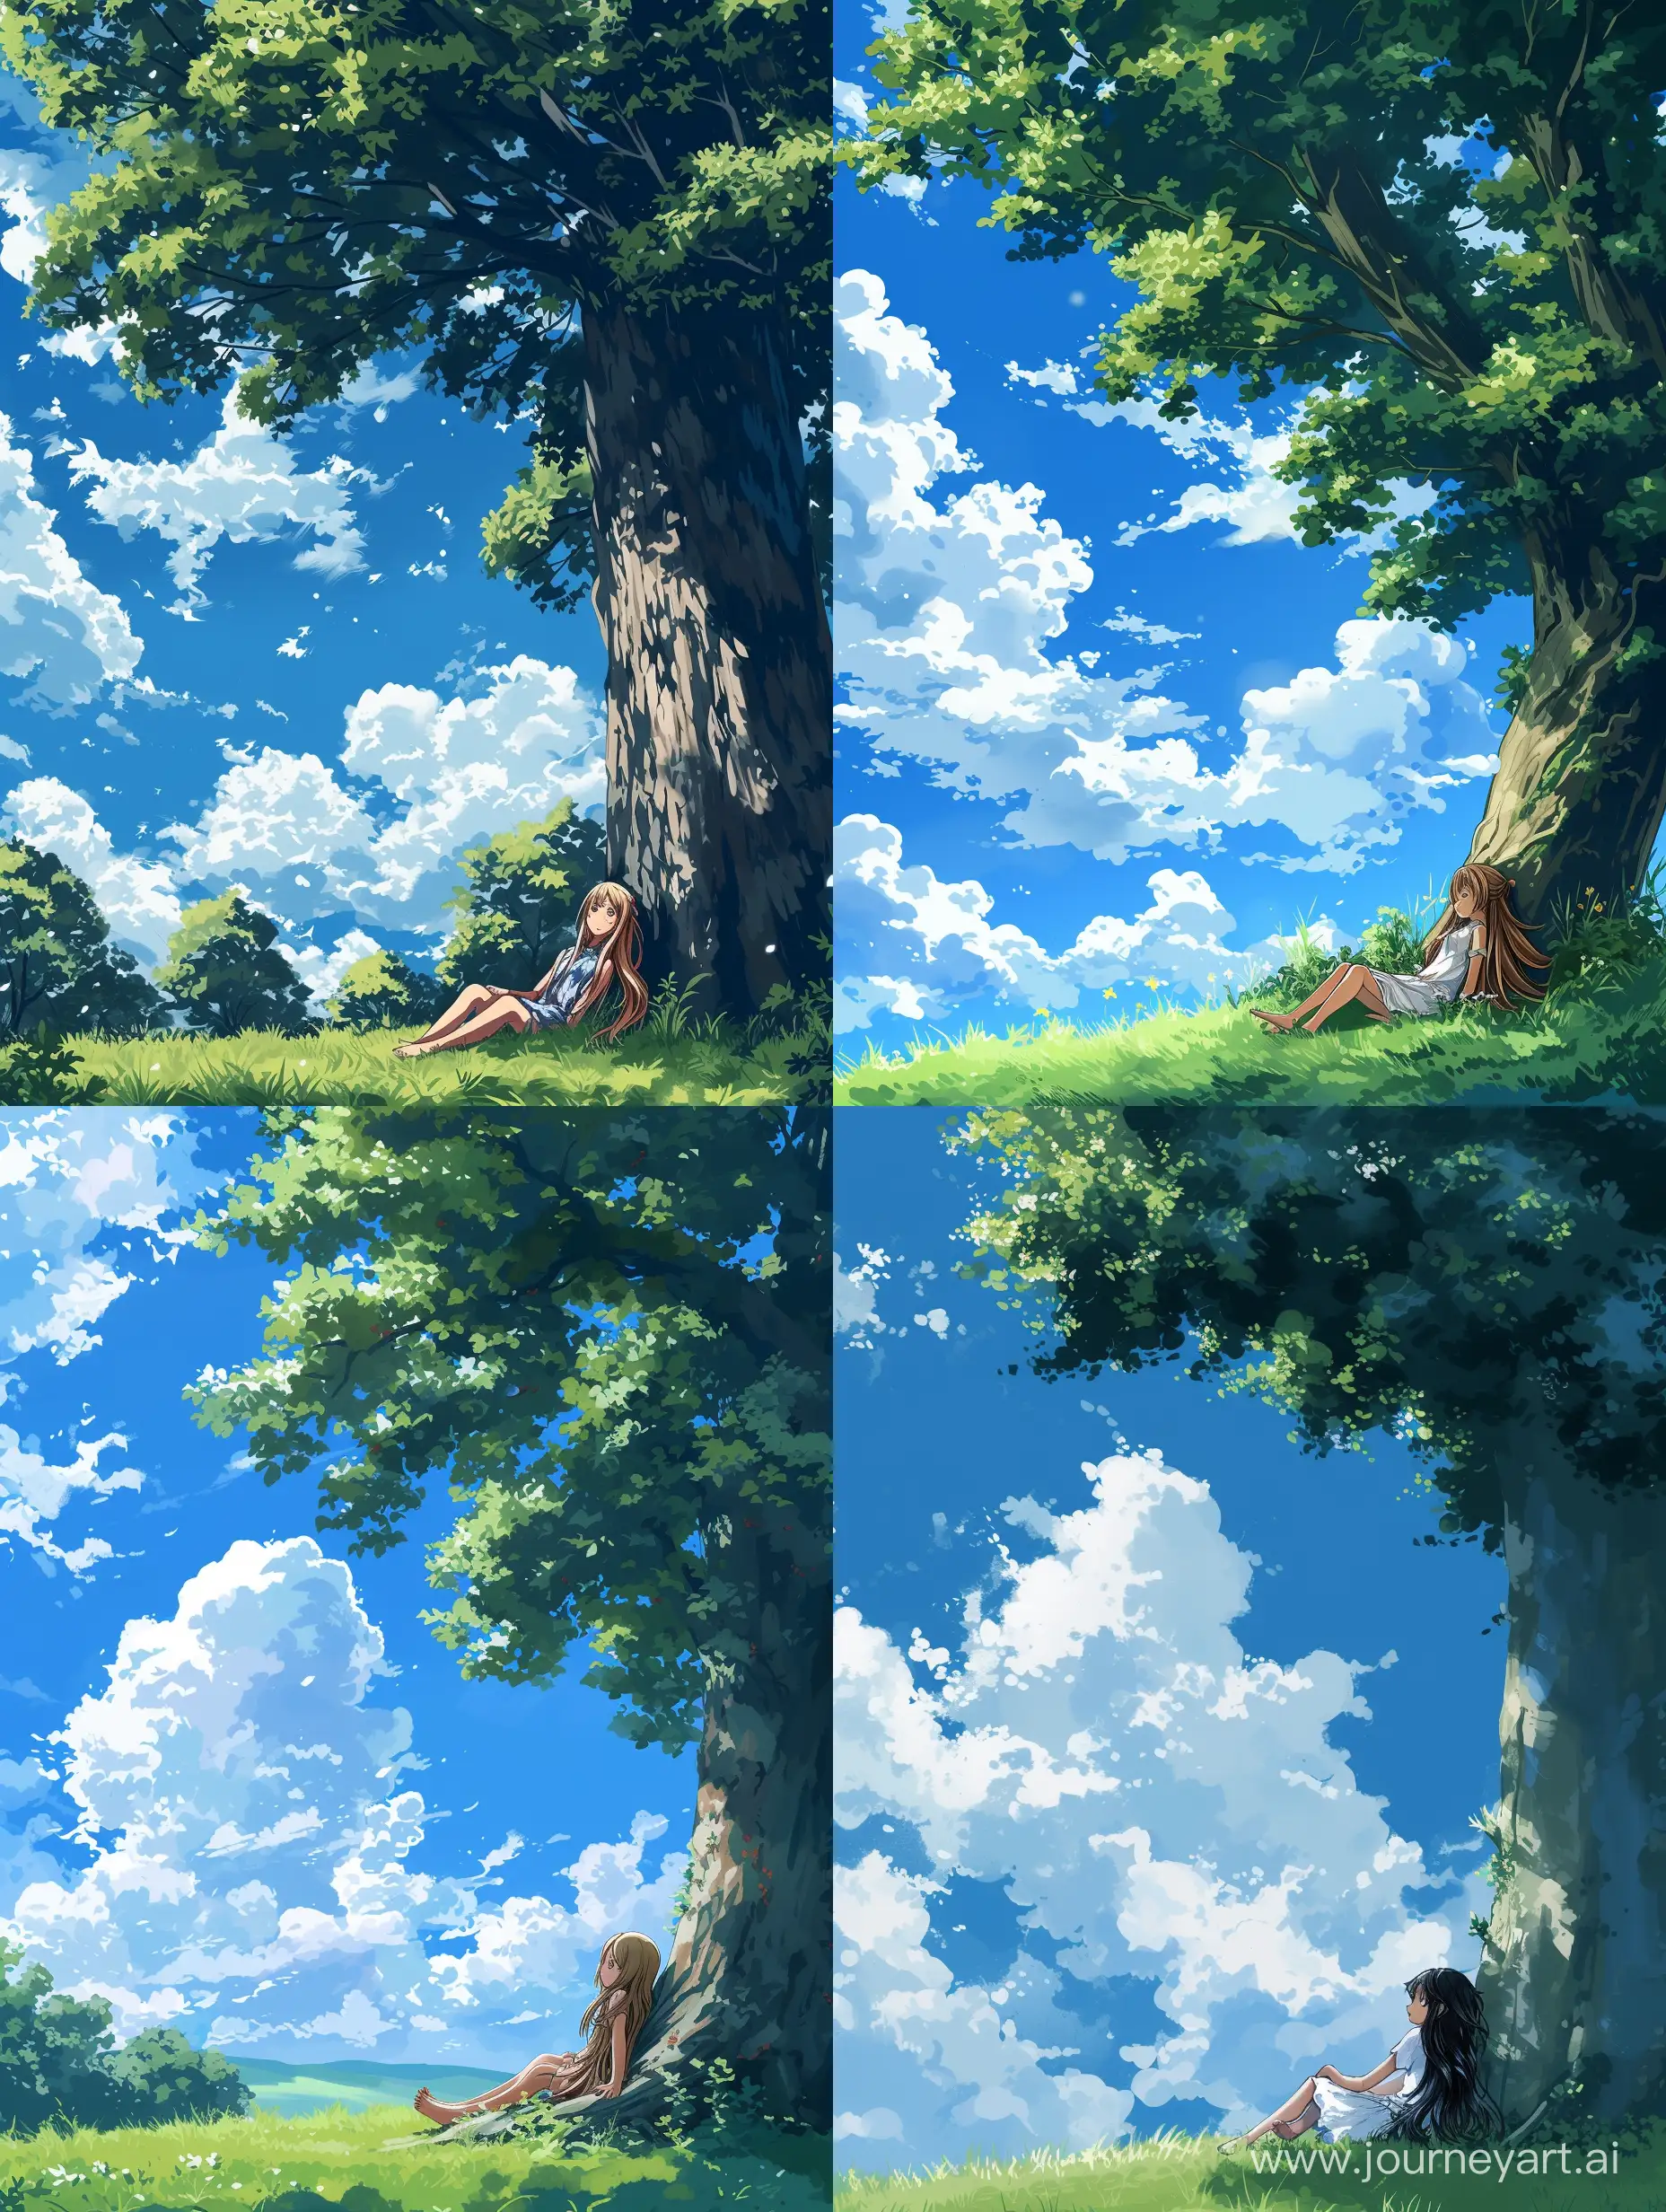 画一个蓝天白云草地，一个长发女孩依靠大树休息